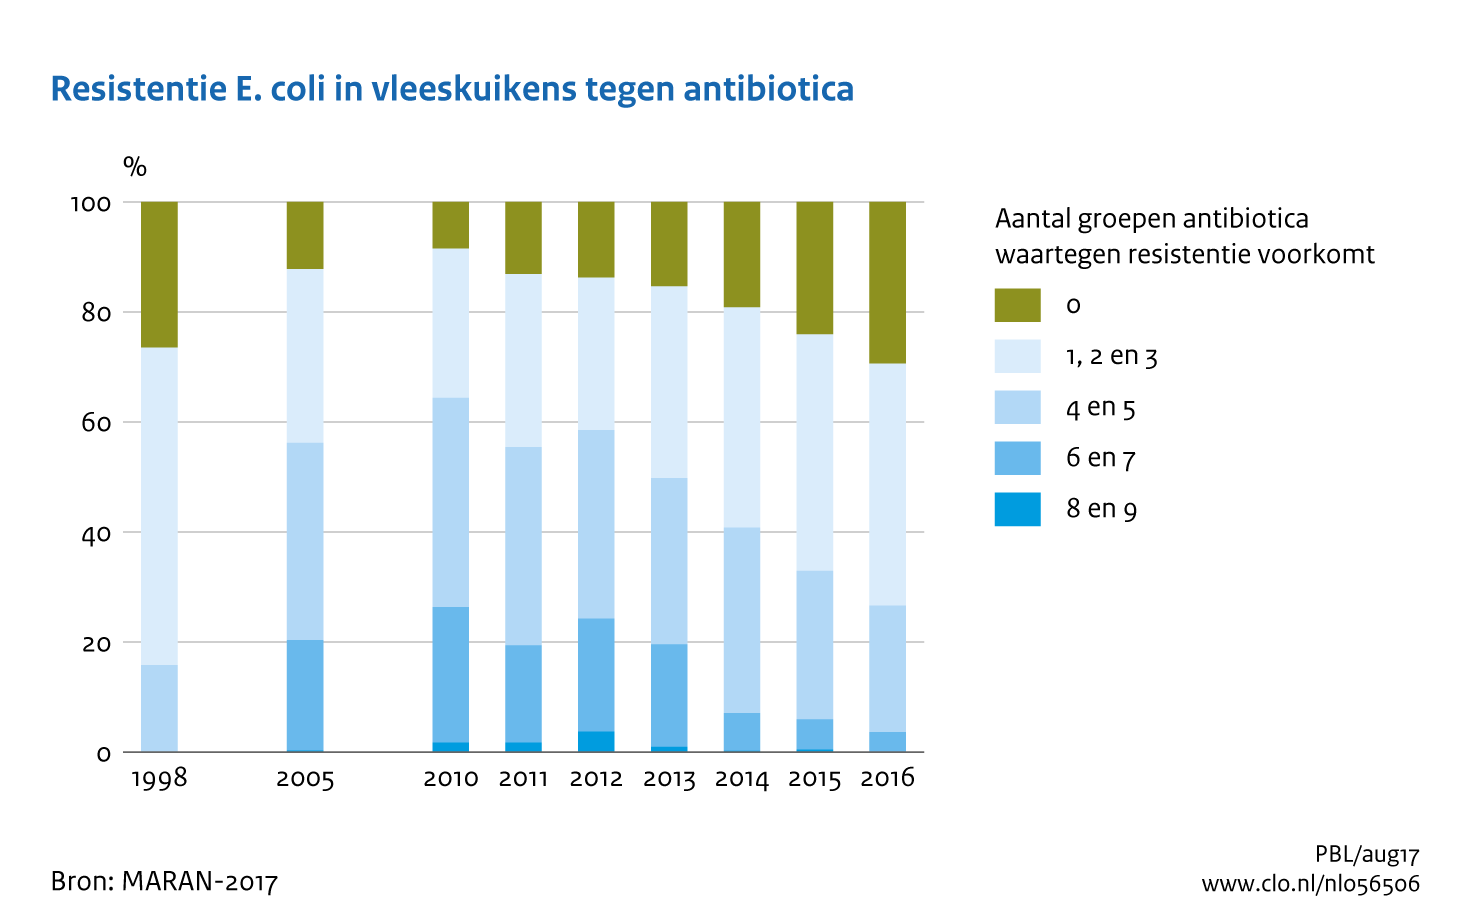 Figuur Resistentie E.coli in vleeskuikens tegen antibiotica. Meervoudige resistentie tegen antibiotica neemt af. . In de rest van de tekst wordt deze figuur uitgebreider uitgelegd.